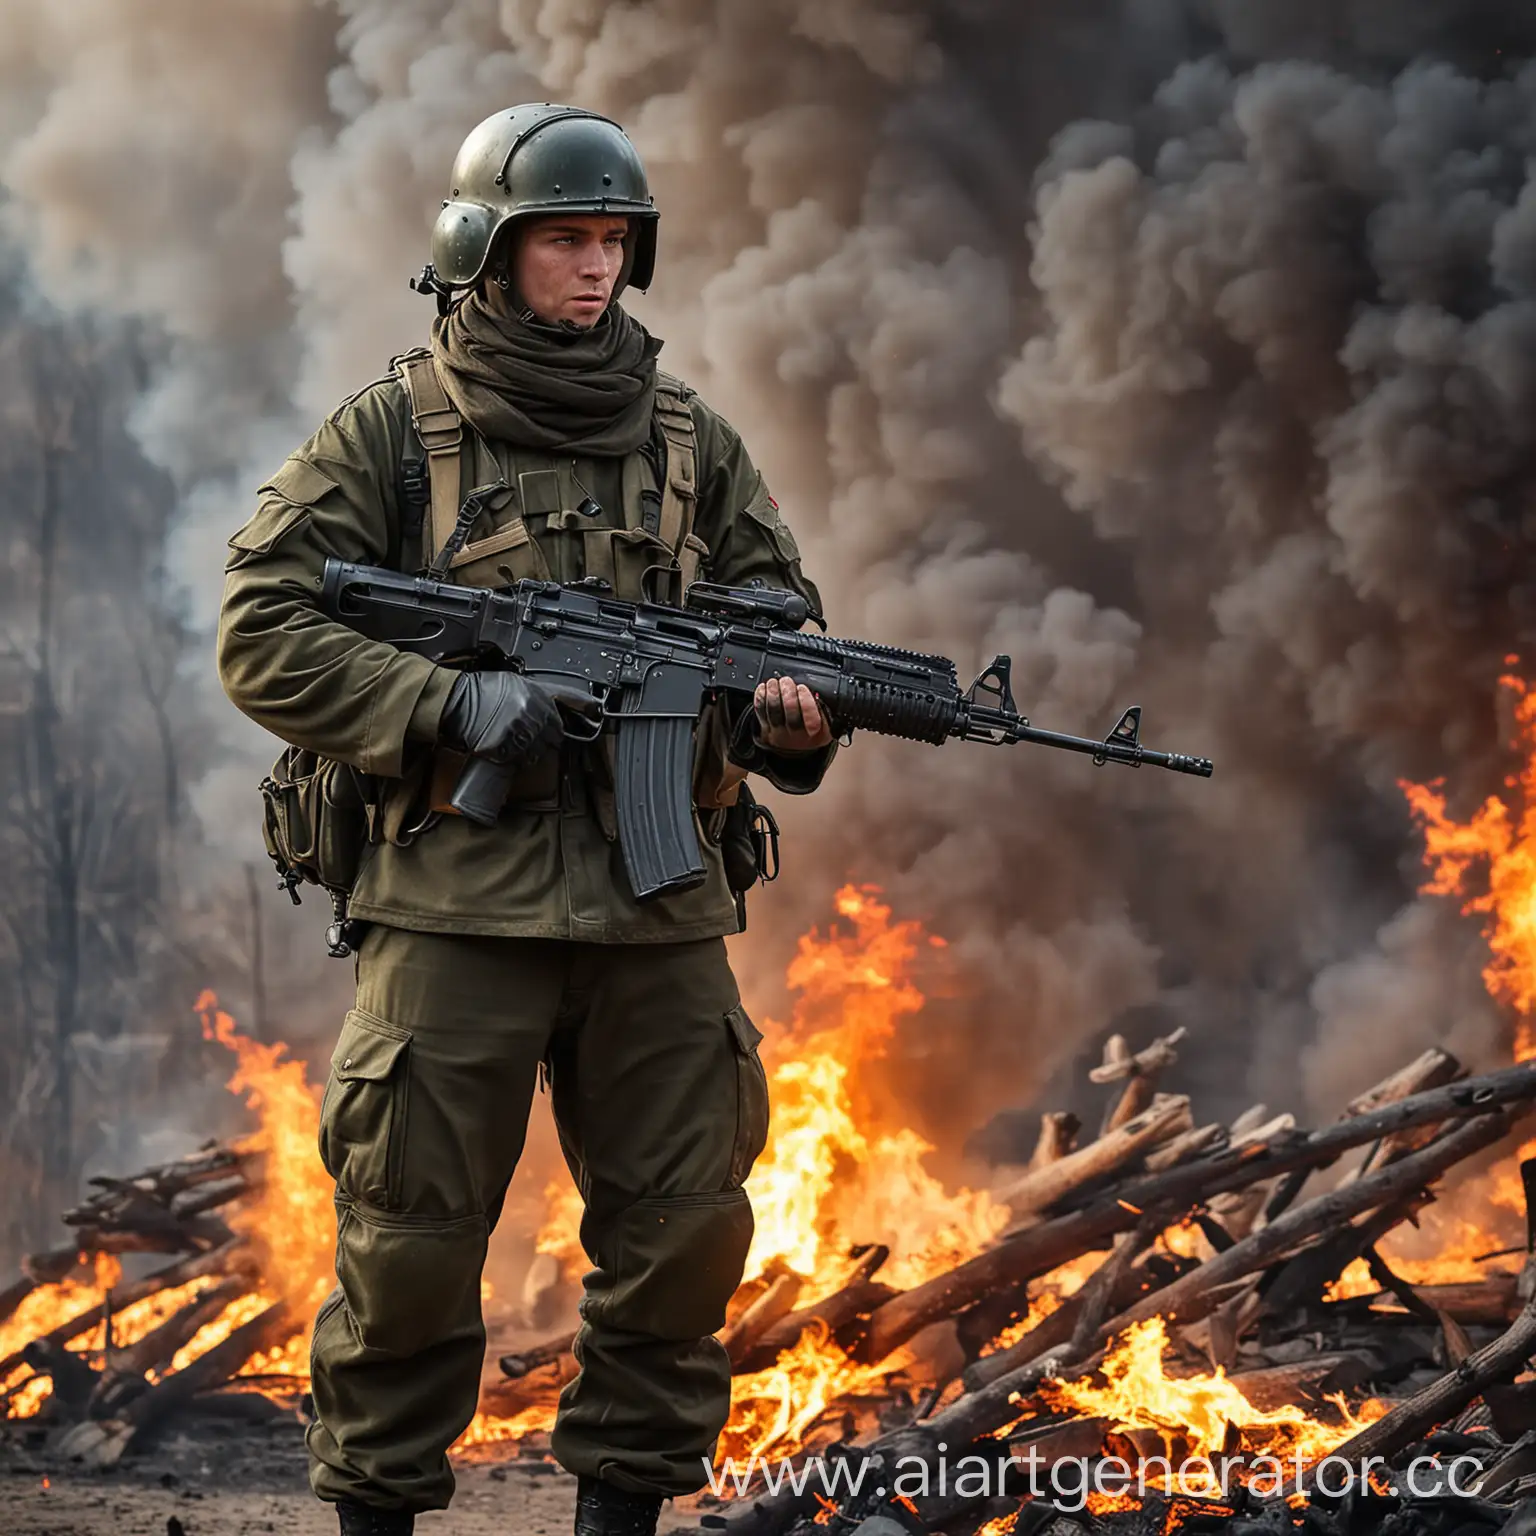 Российский солдат с пулеметом (ПКМ Пулемет Калашникова Модернизированный) стоит на фоне огня

